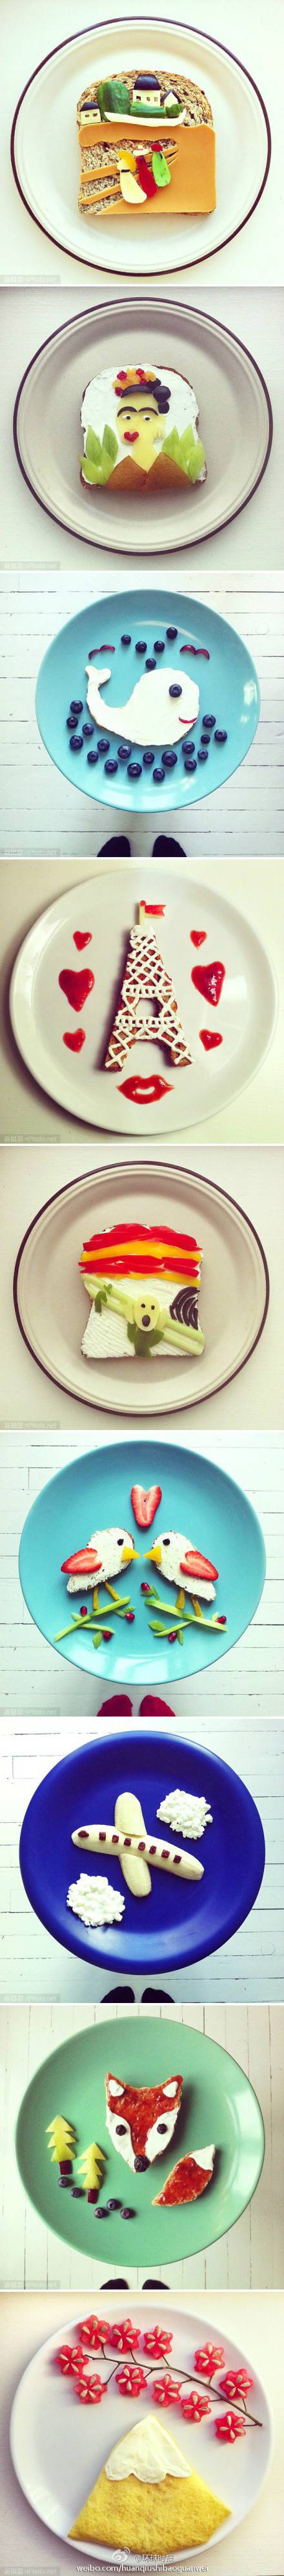 美味造型创意的早餐图片